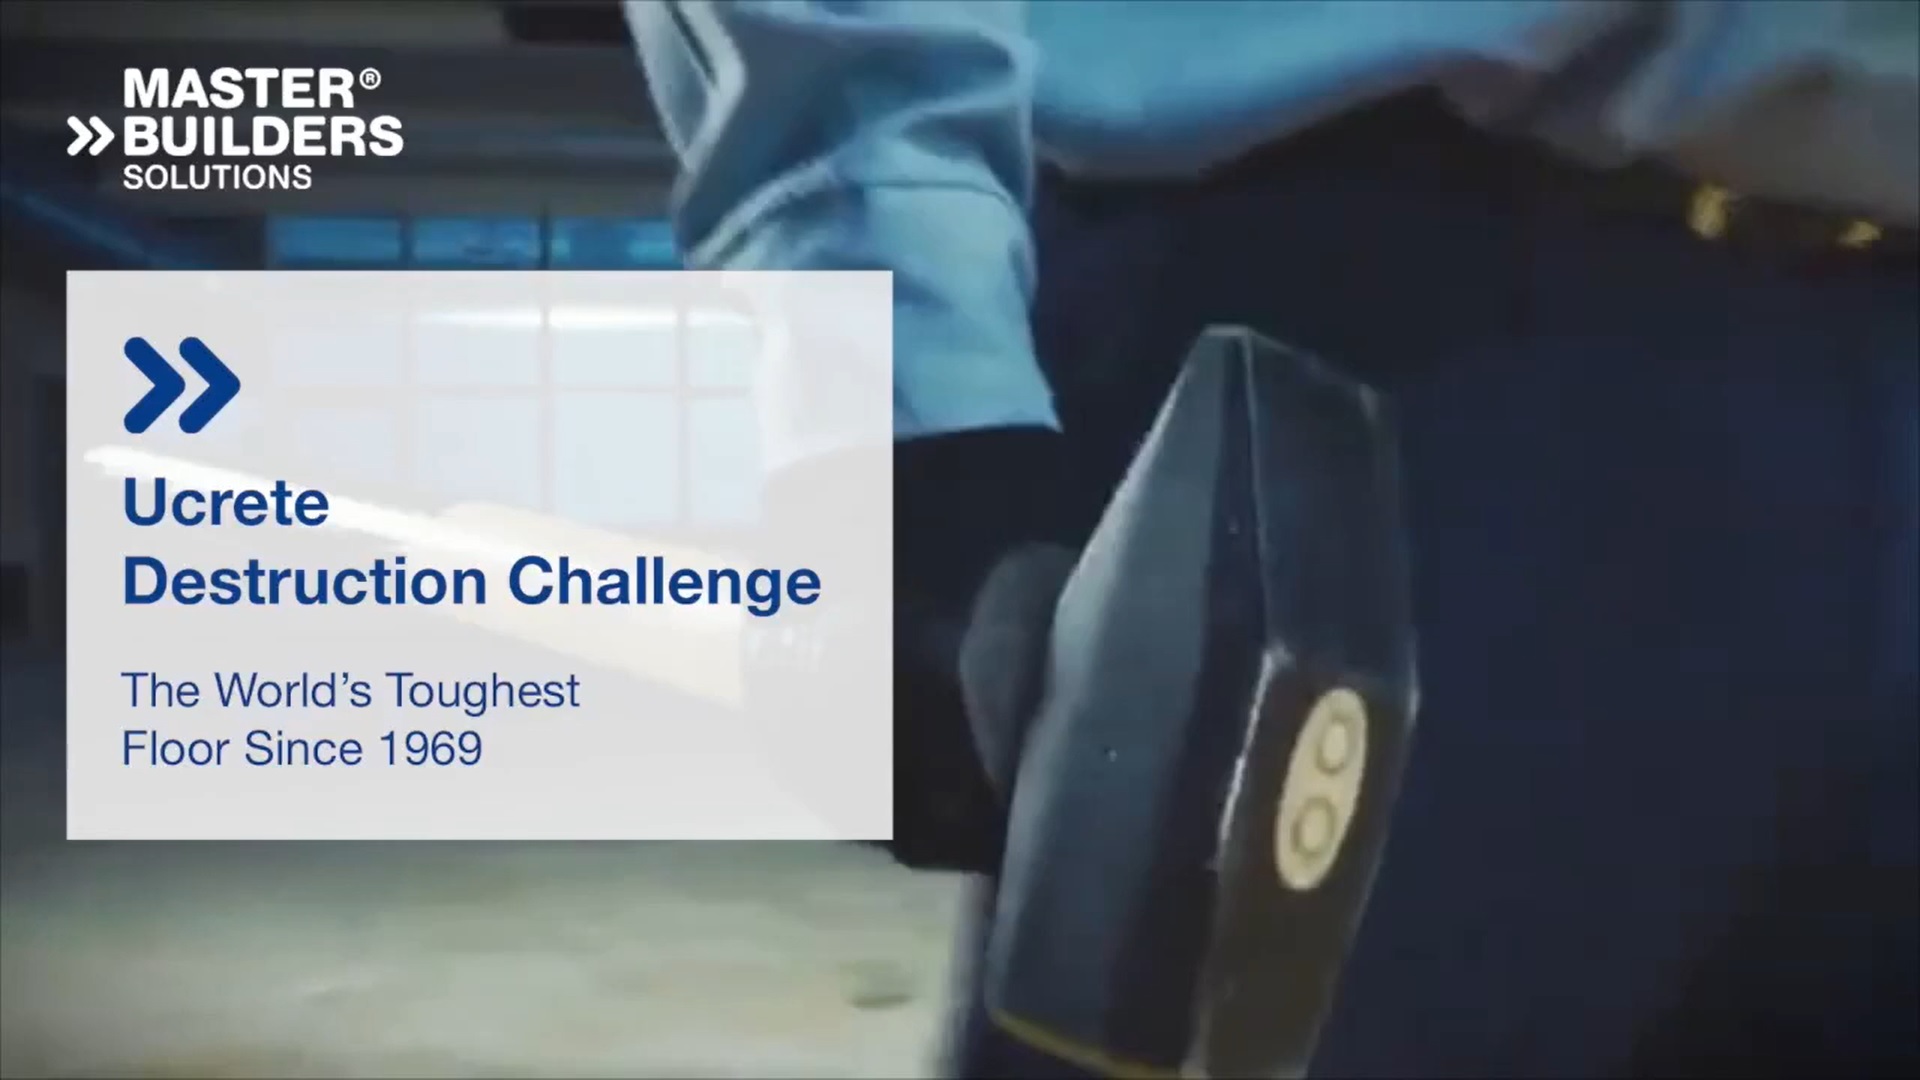 Watch the Ucrete Destruction Challenge video